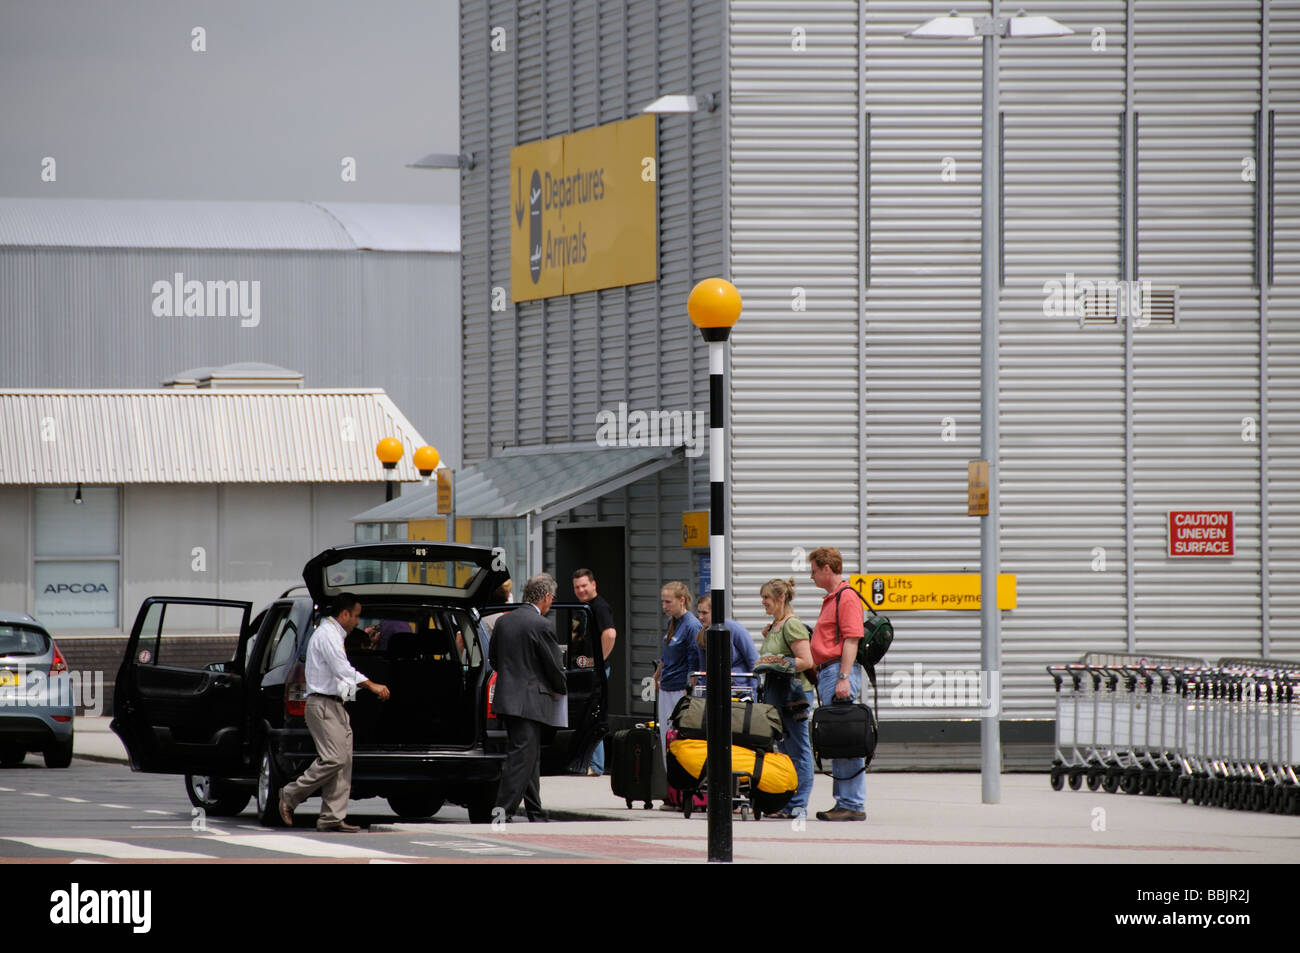 Rencontrer et accueillir les voyageurs d'être pris en charge à la borne 4 de l'aéroport Heathrow de Londres Angleterre Royaume-uni Banque D'Images